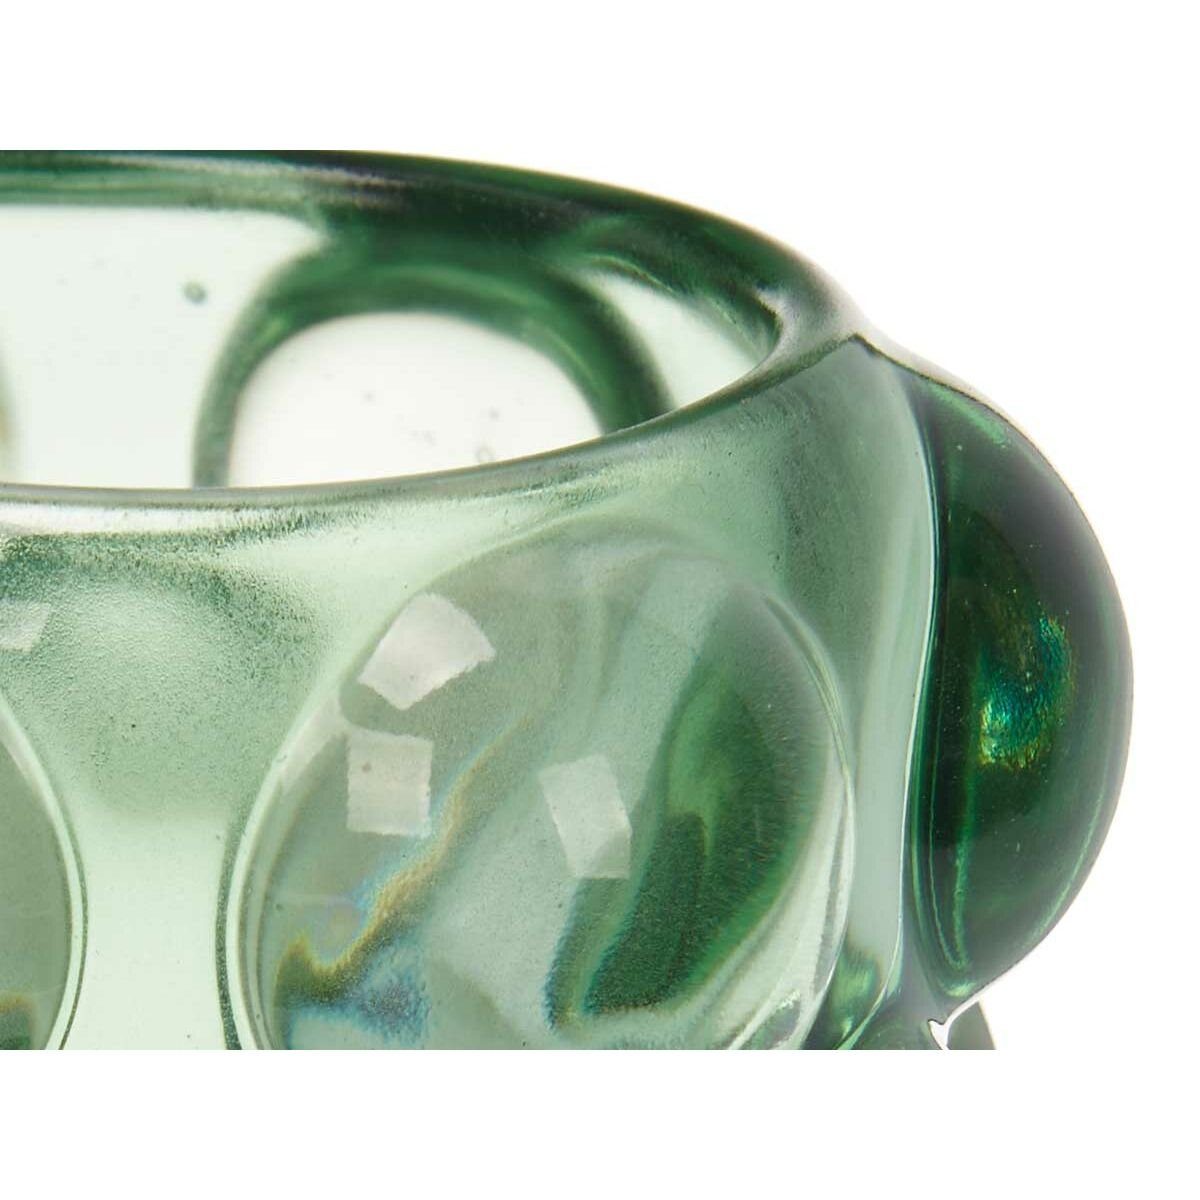 Gift Decor grün Windlicht Mikrosphären 8,4 x 8,4 Kerzenschale 9 Stück x cm Glas 12